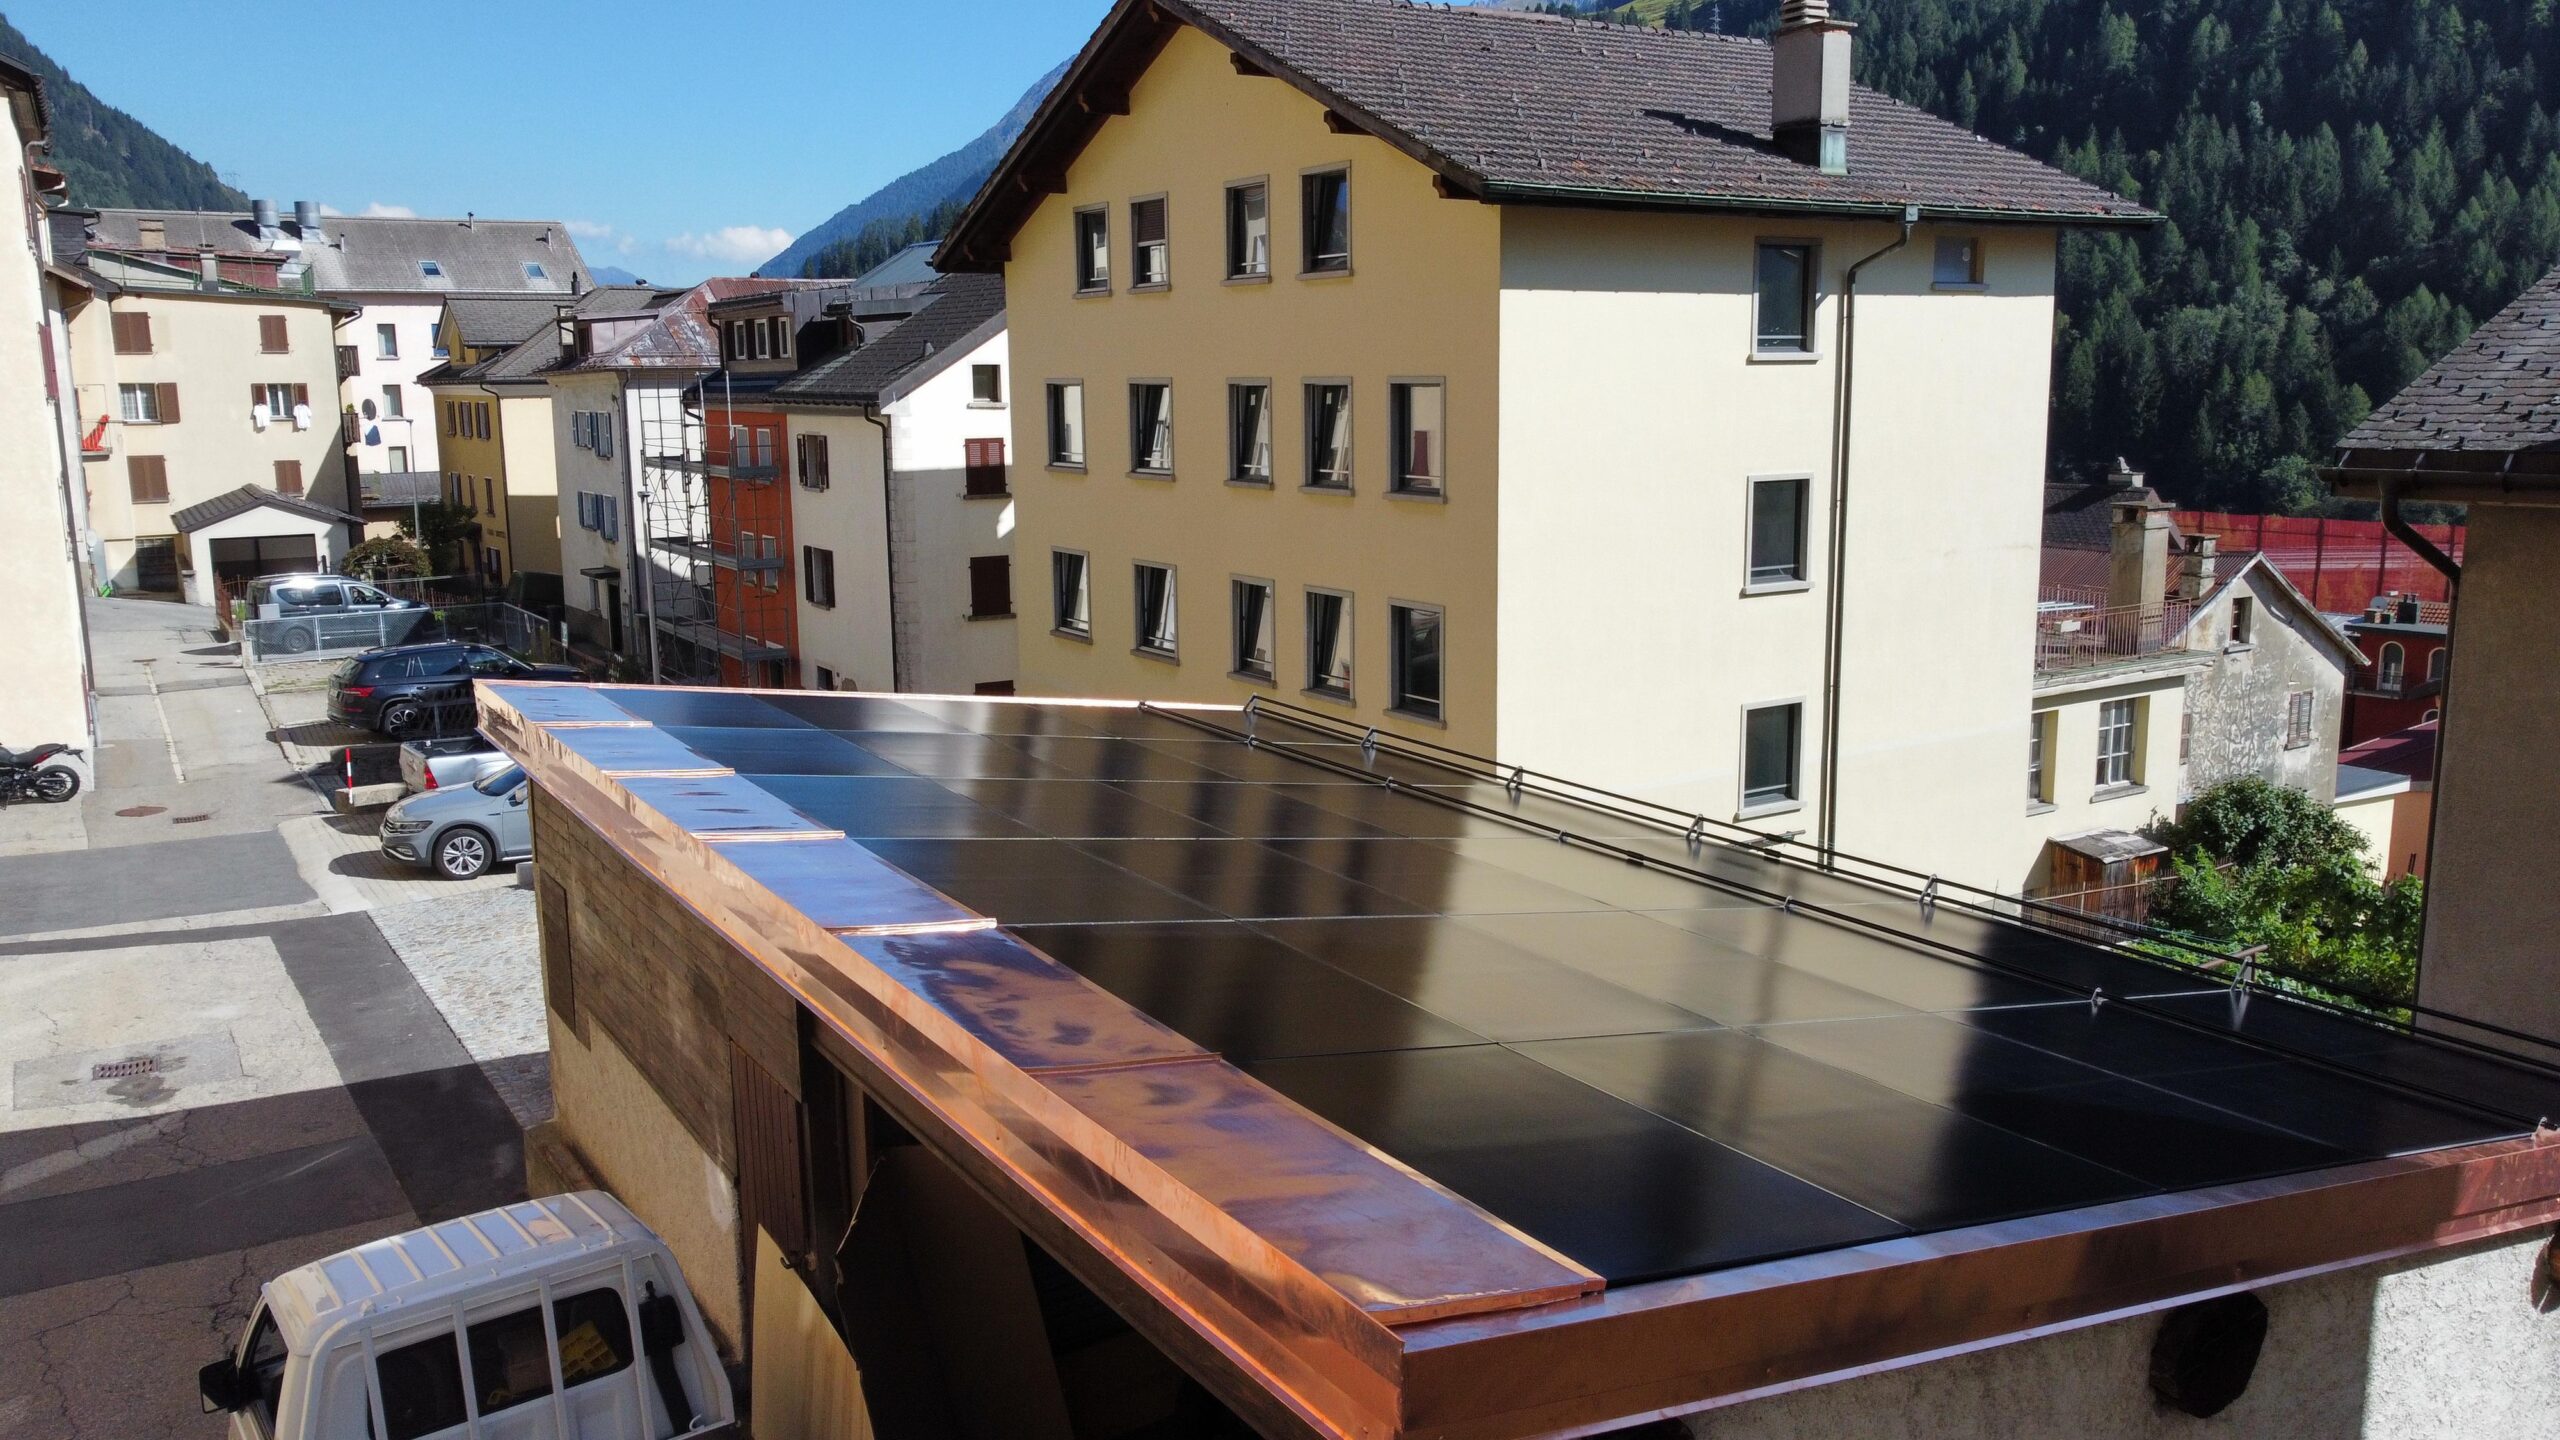 Un tetto a tutto fotovoltaico!